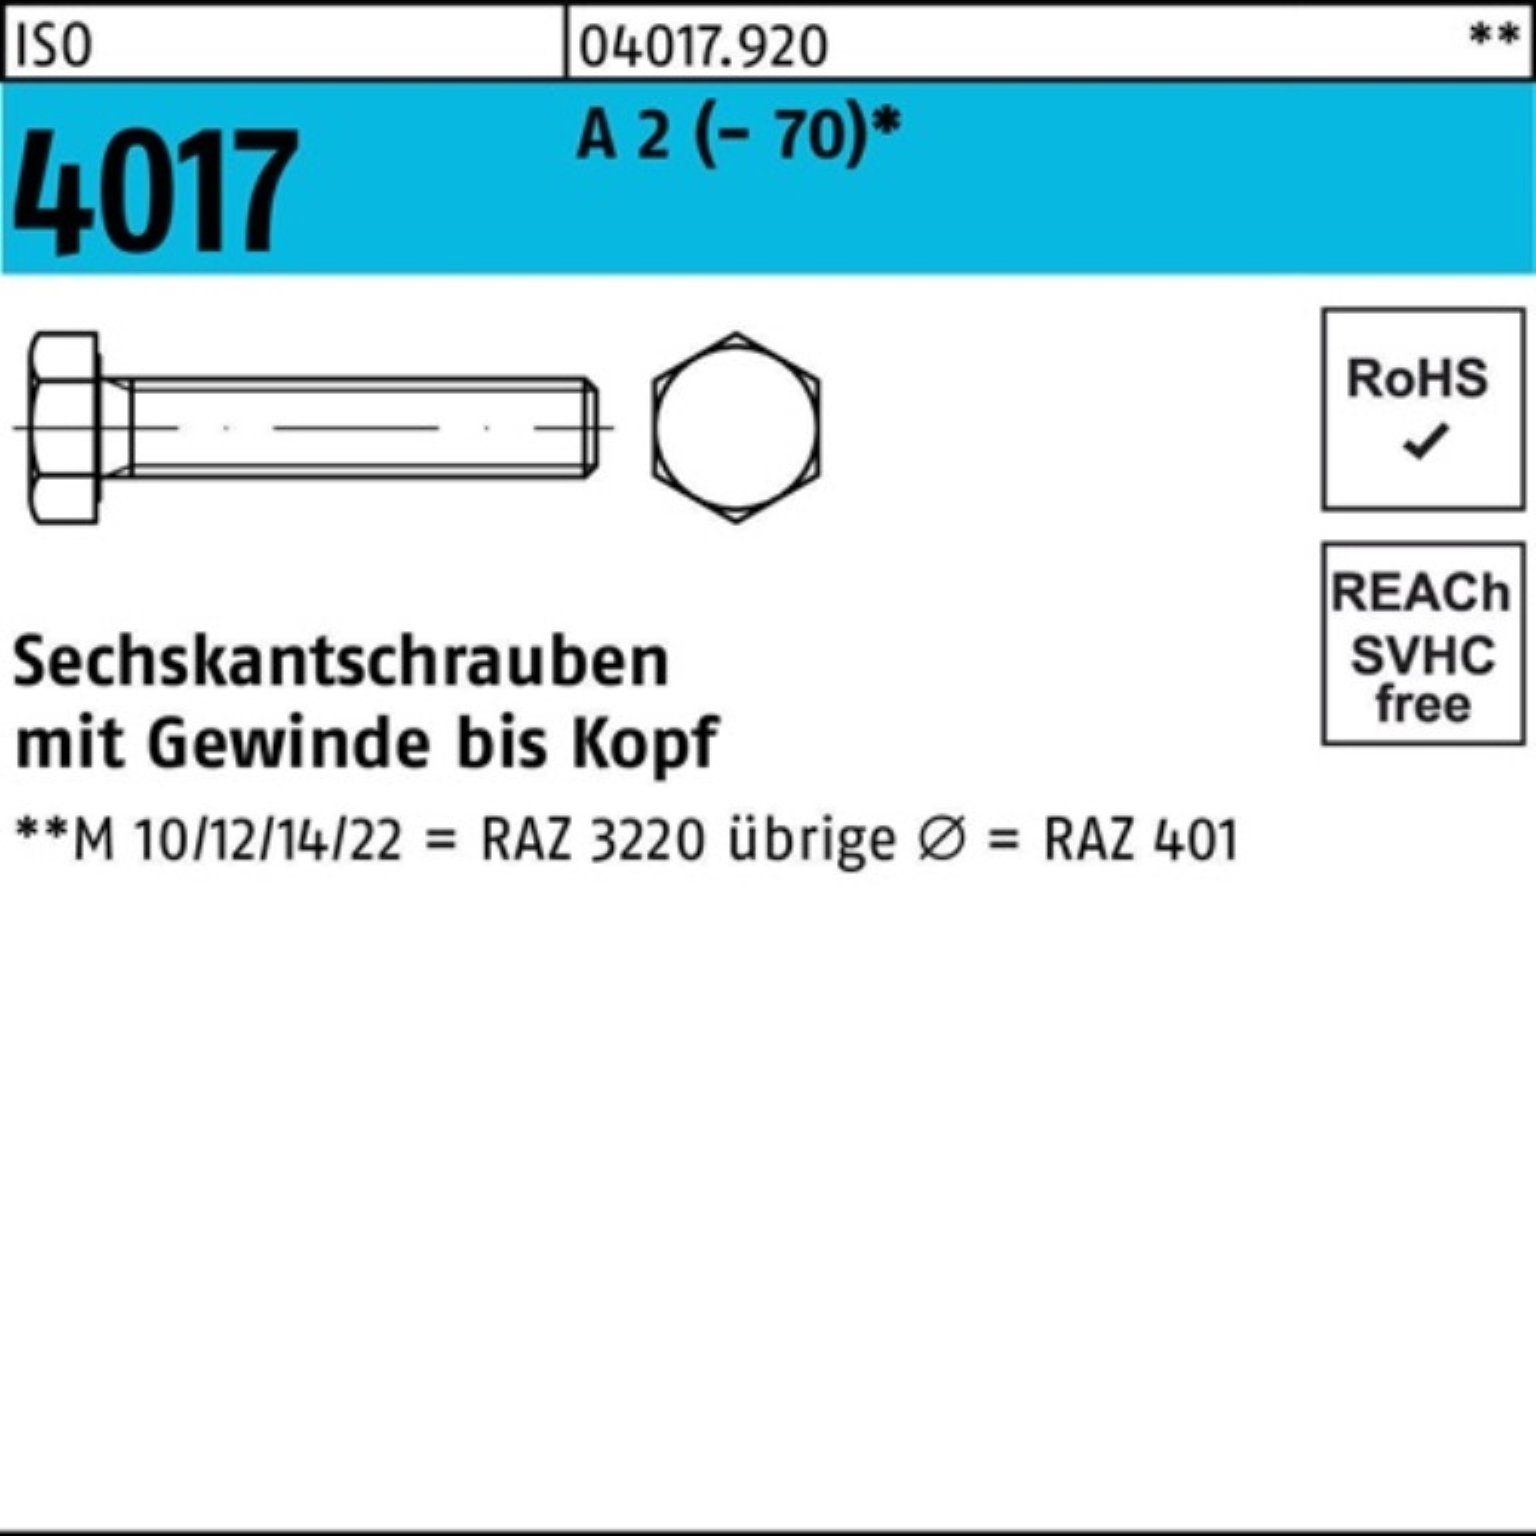 Pack 4017 2 VG ISO M5x Sechskantschraube 35 Stück 200er Bufab A 200 Sechskantschraube (70)